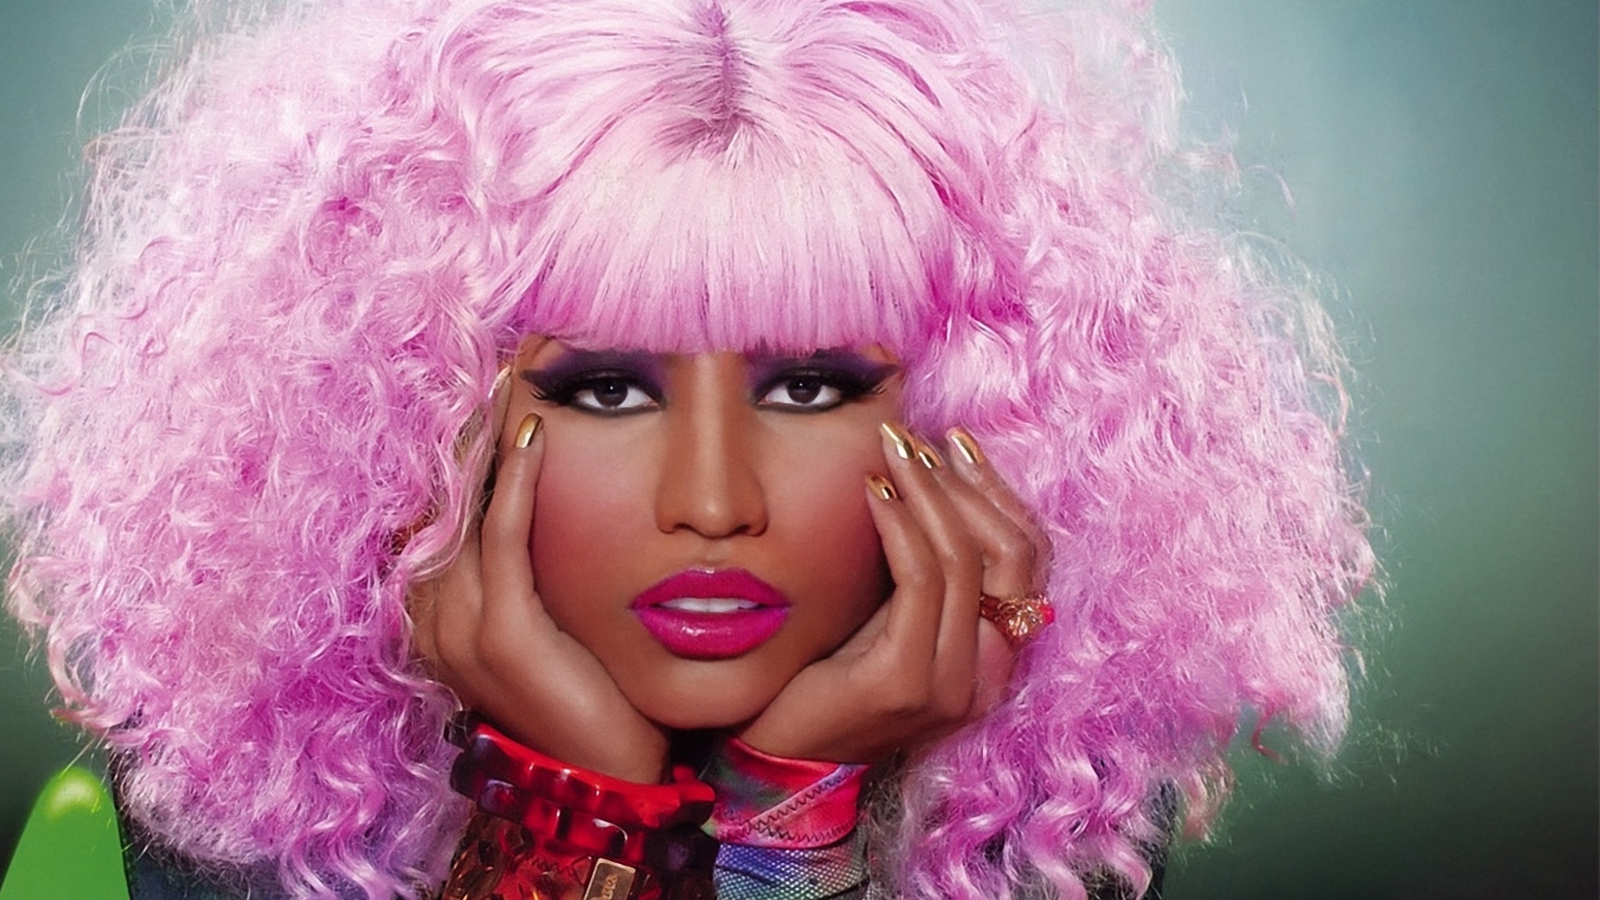 Nicki Minaj wallpaper 1600x900